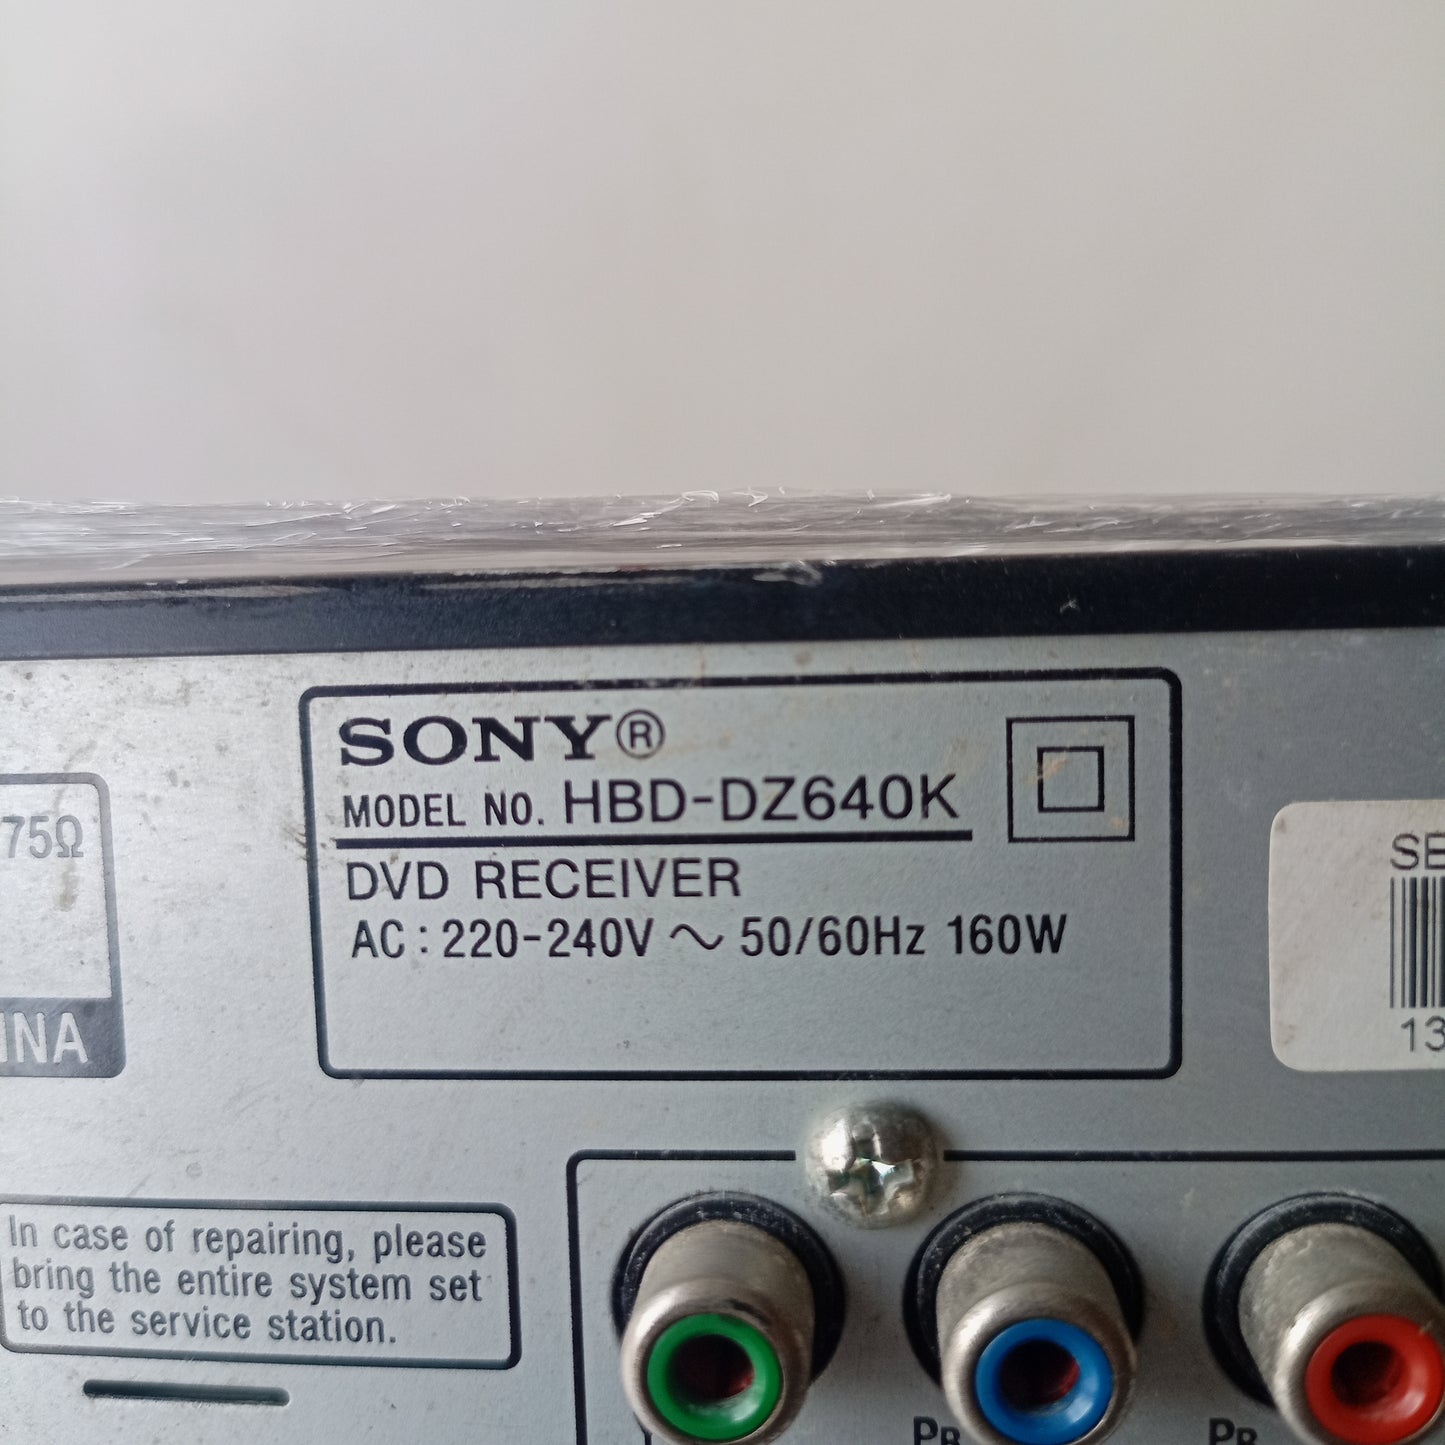 Sony HBD-DZ640K 5.1Ch 1000 Watts DVD Home Theater Machine Head - Model number sticker